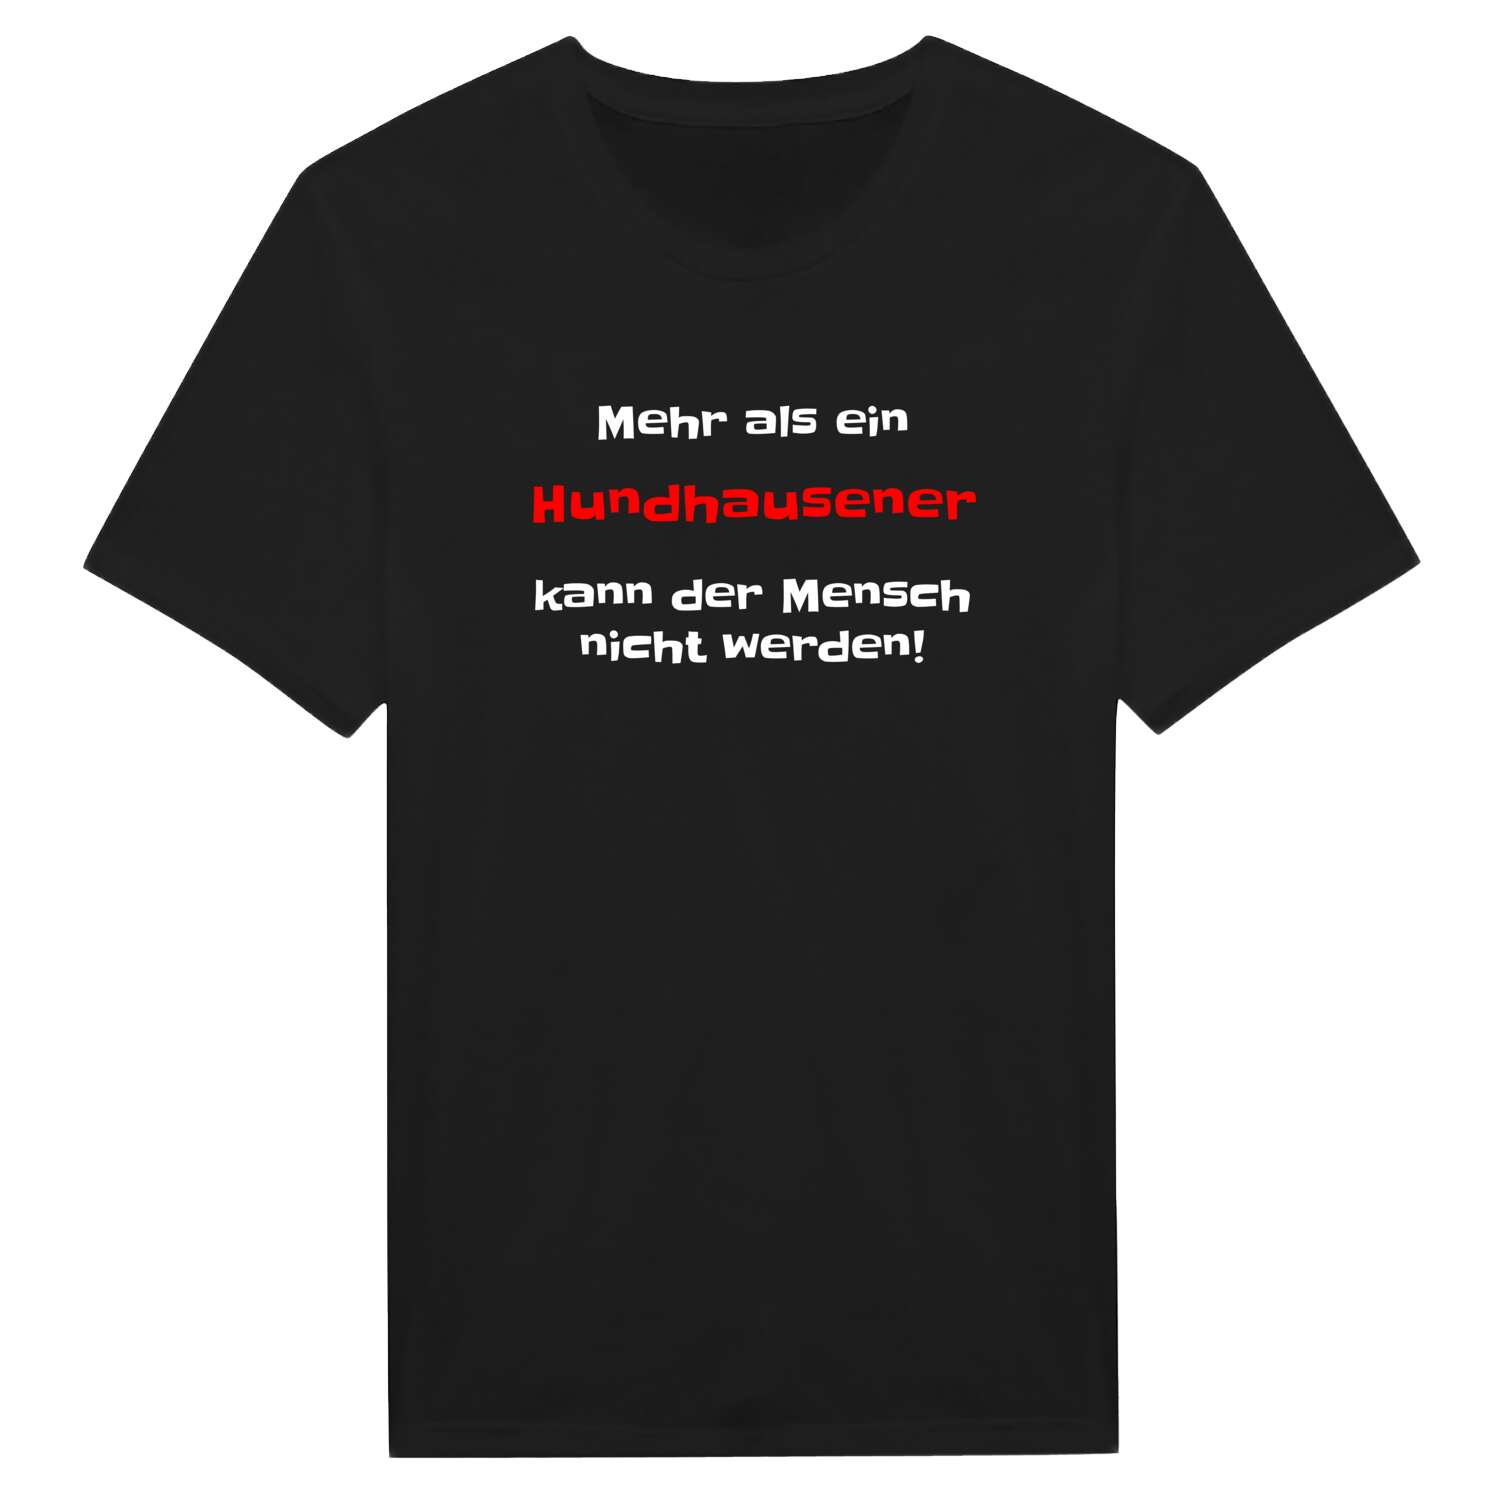 Hundhausen T-Shirt »Mehr als ein«